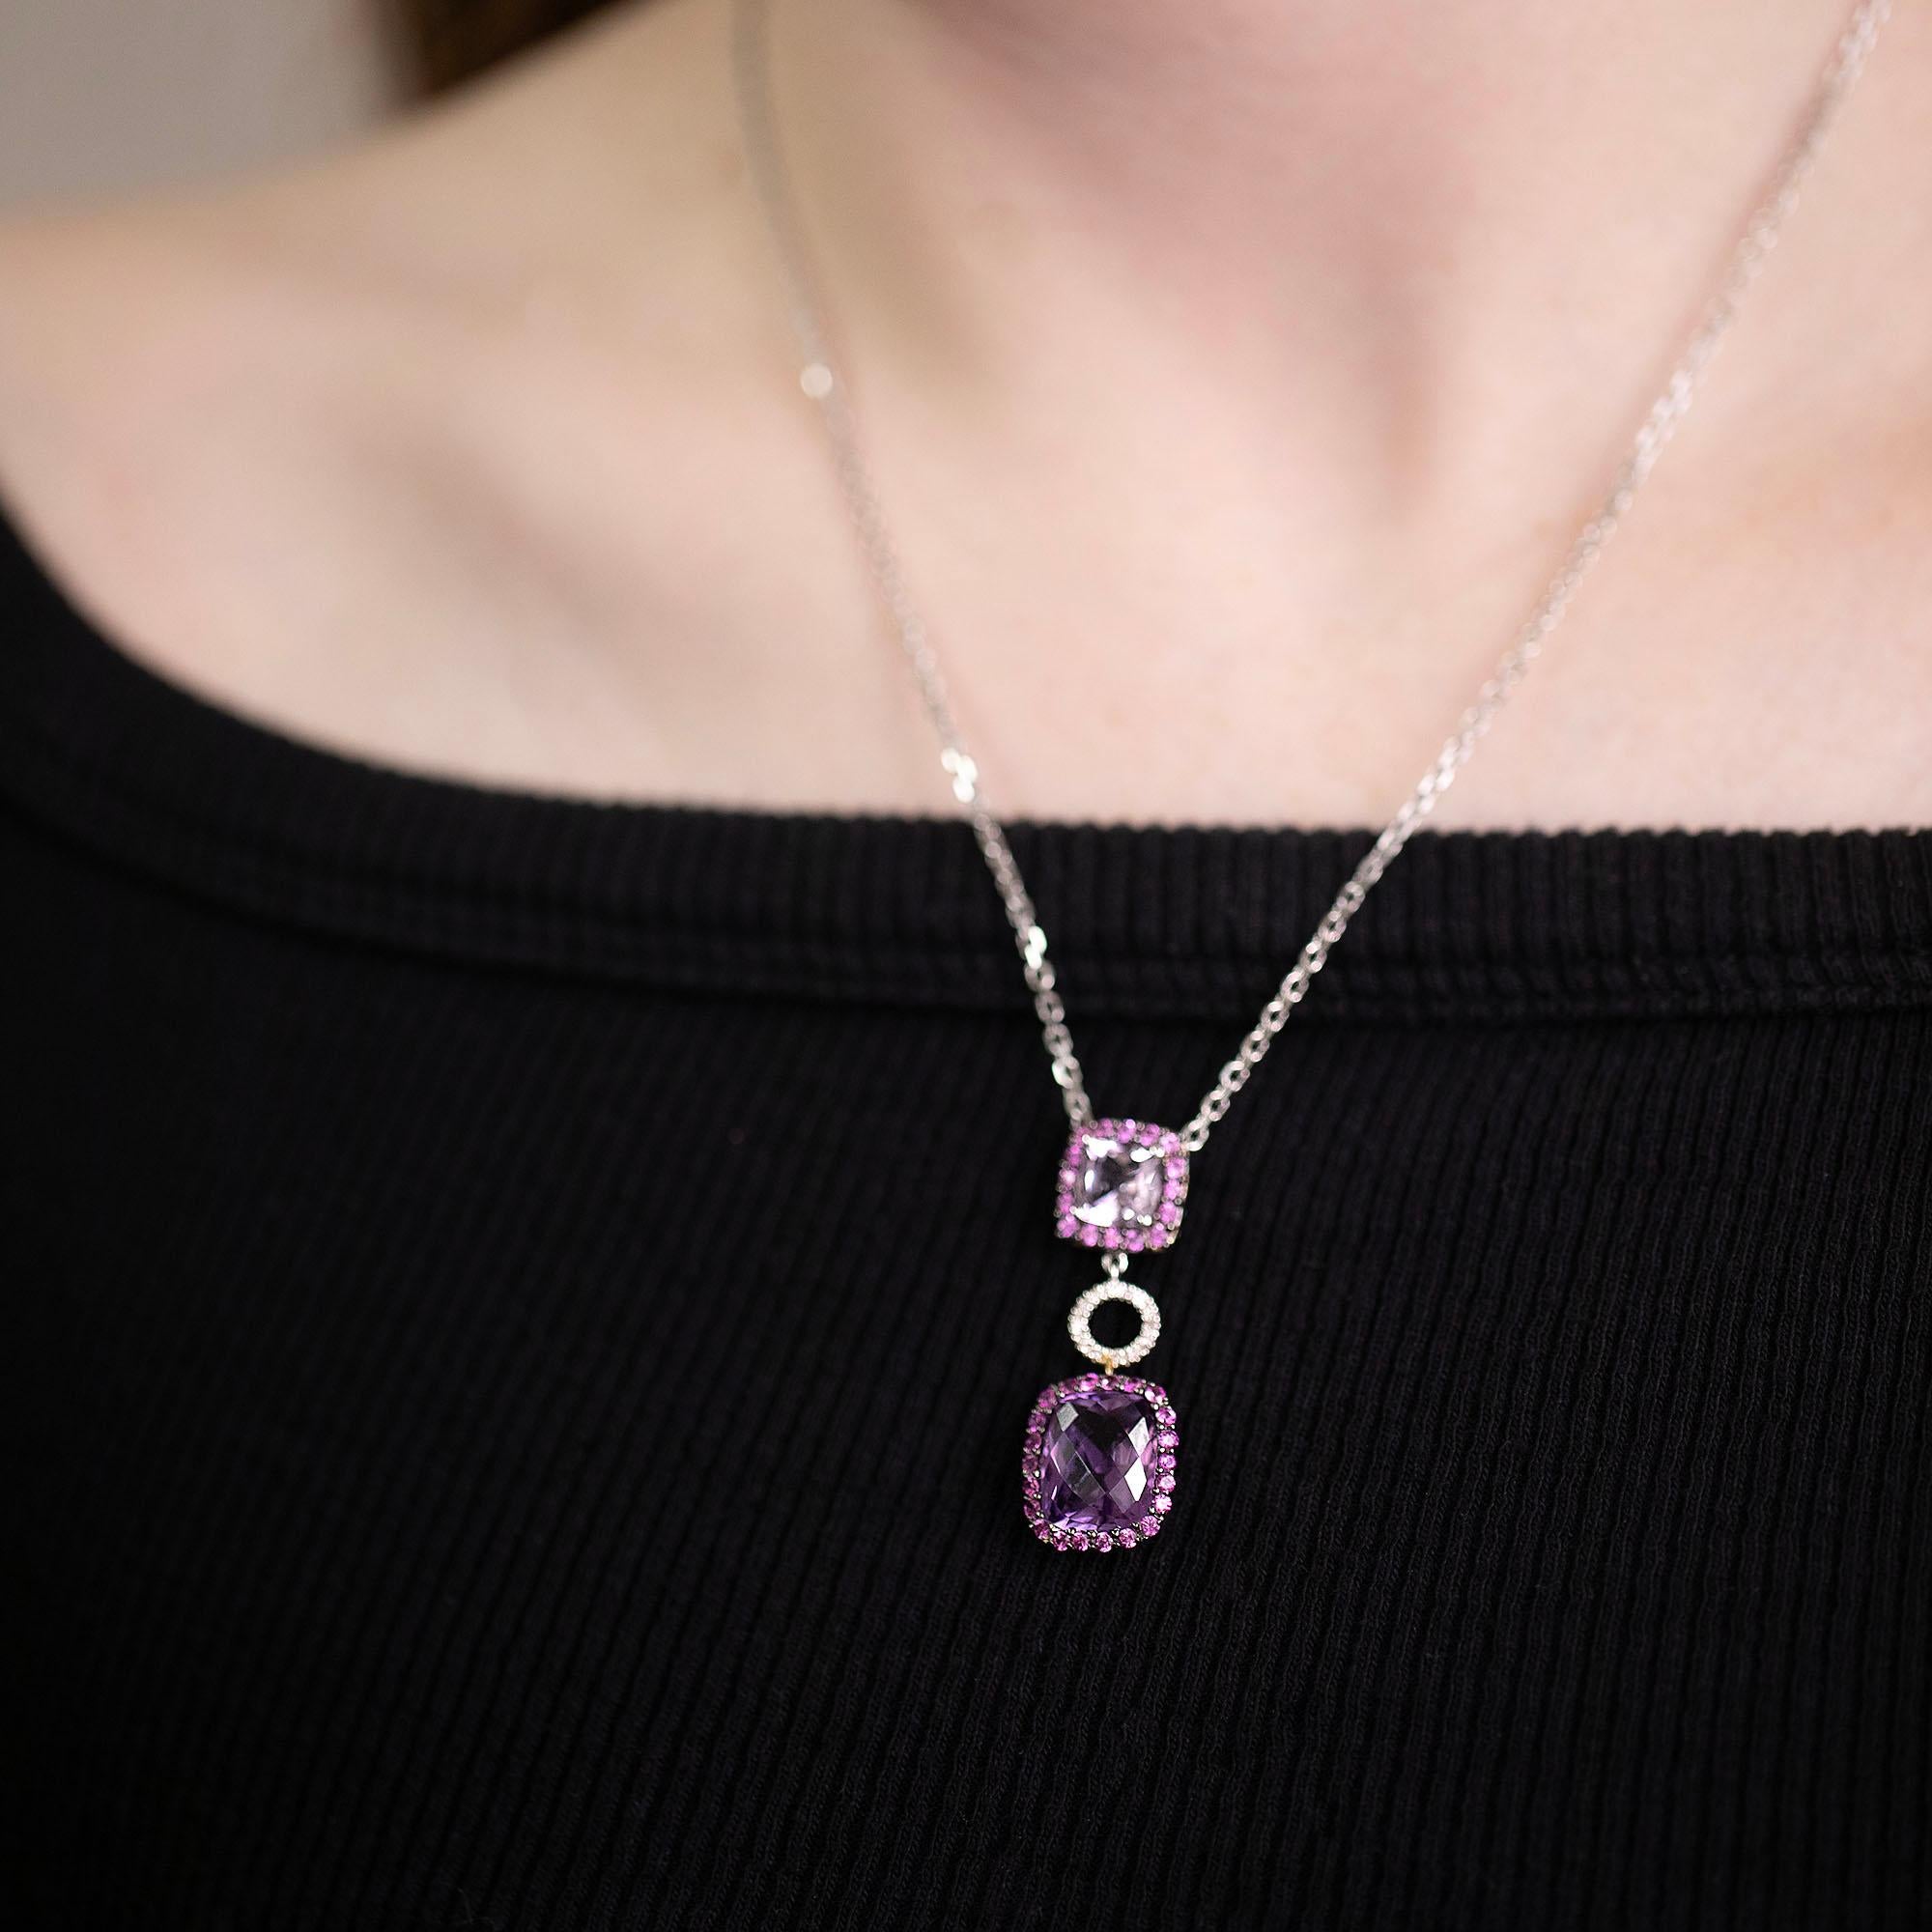 Modernes Collier aus Amethysten, rosa Saphiren und Diamanten, mit doppeltem Tropfenanhänger aus 14-karätigem Gold und schwarzem Rhodium. Ein lustiges Farbspiel für ein glamouröses Schmuckstück mit einem einzigartigen Amethyst im